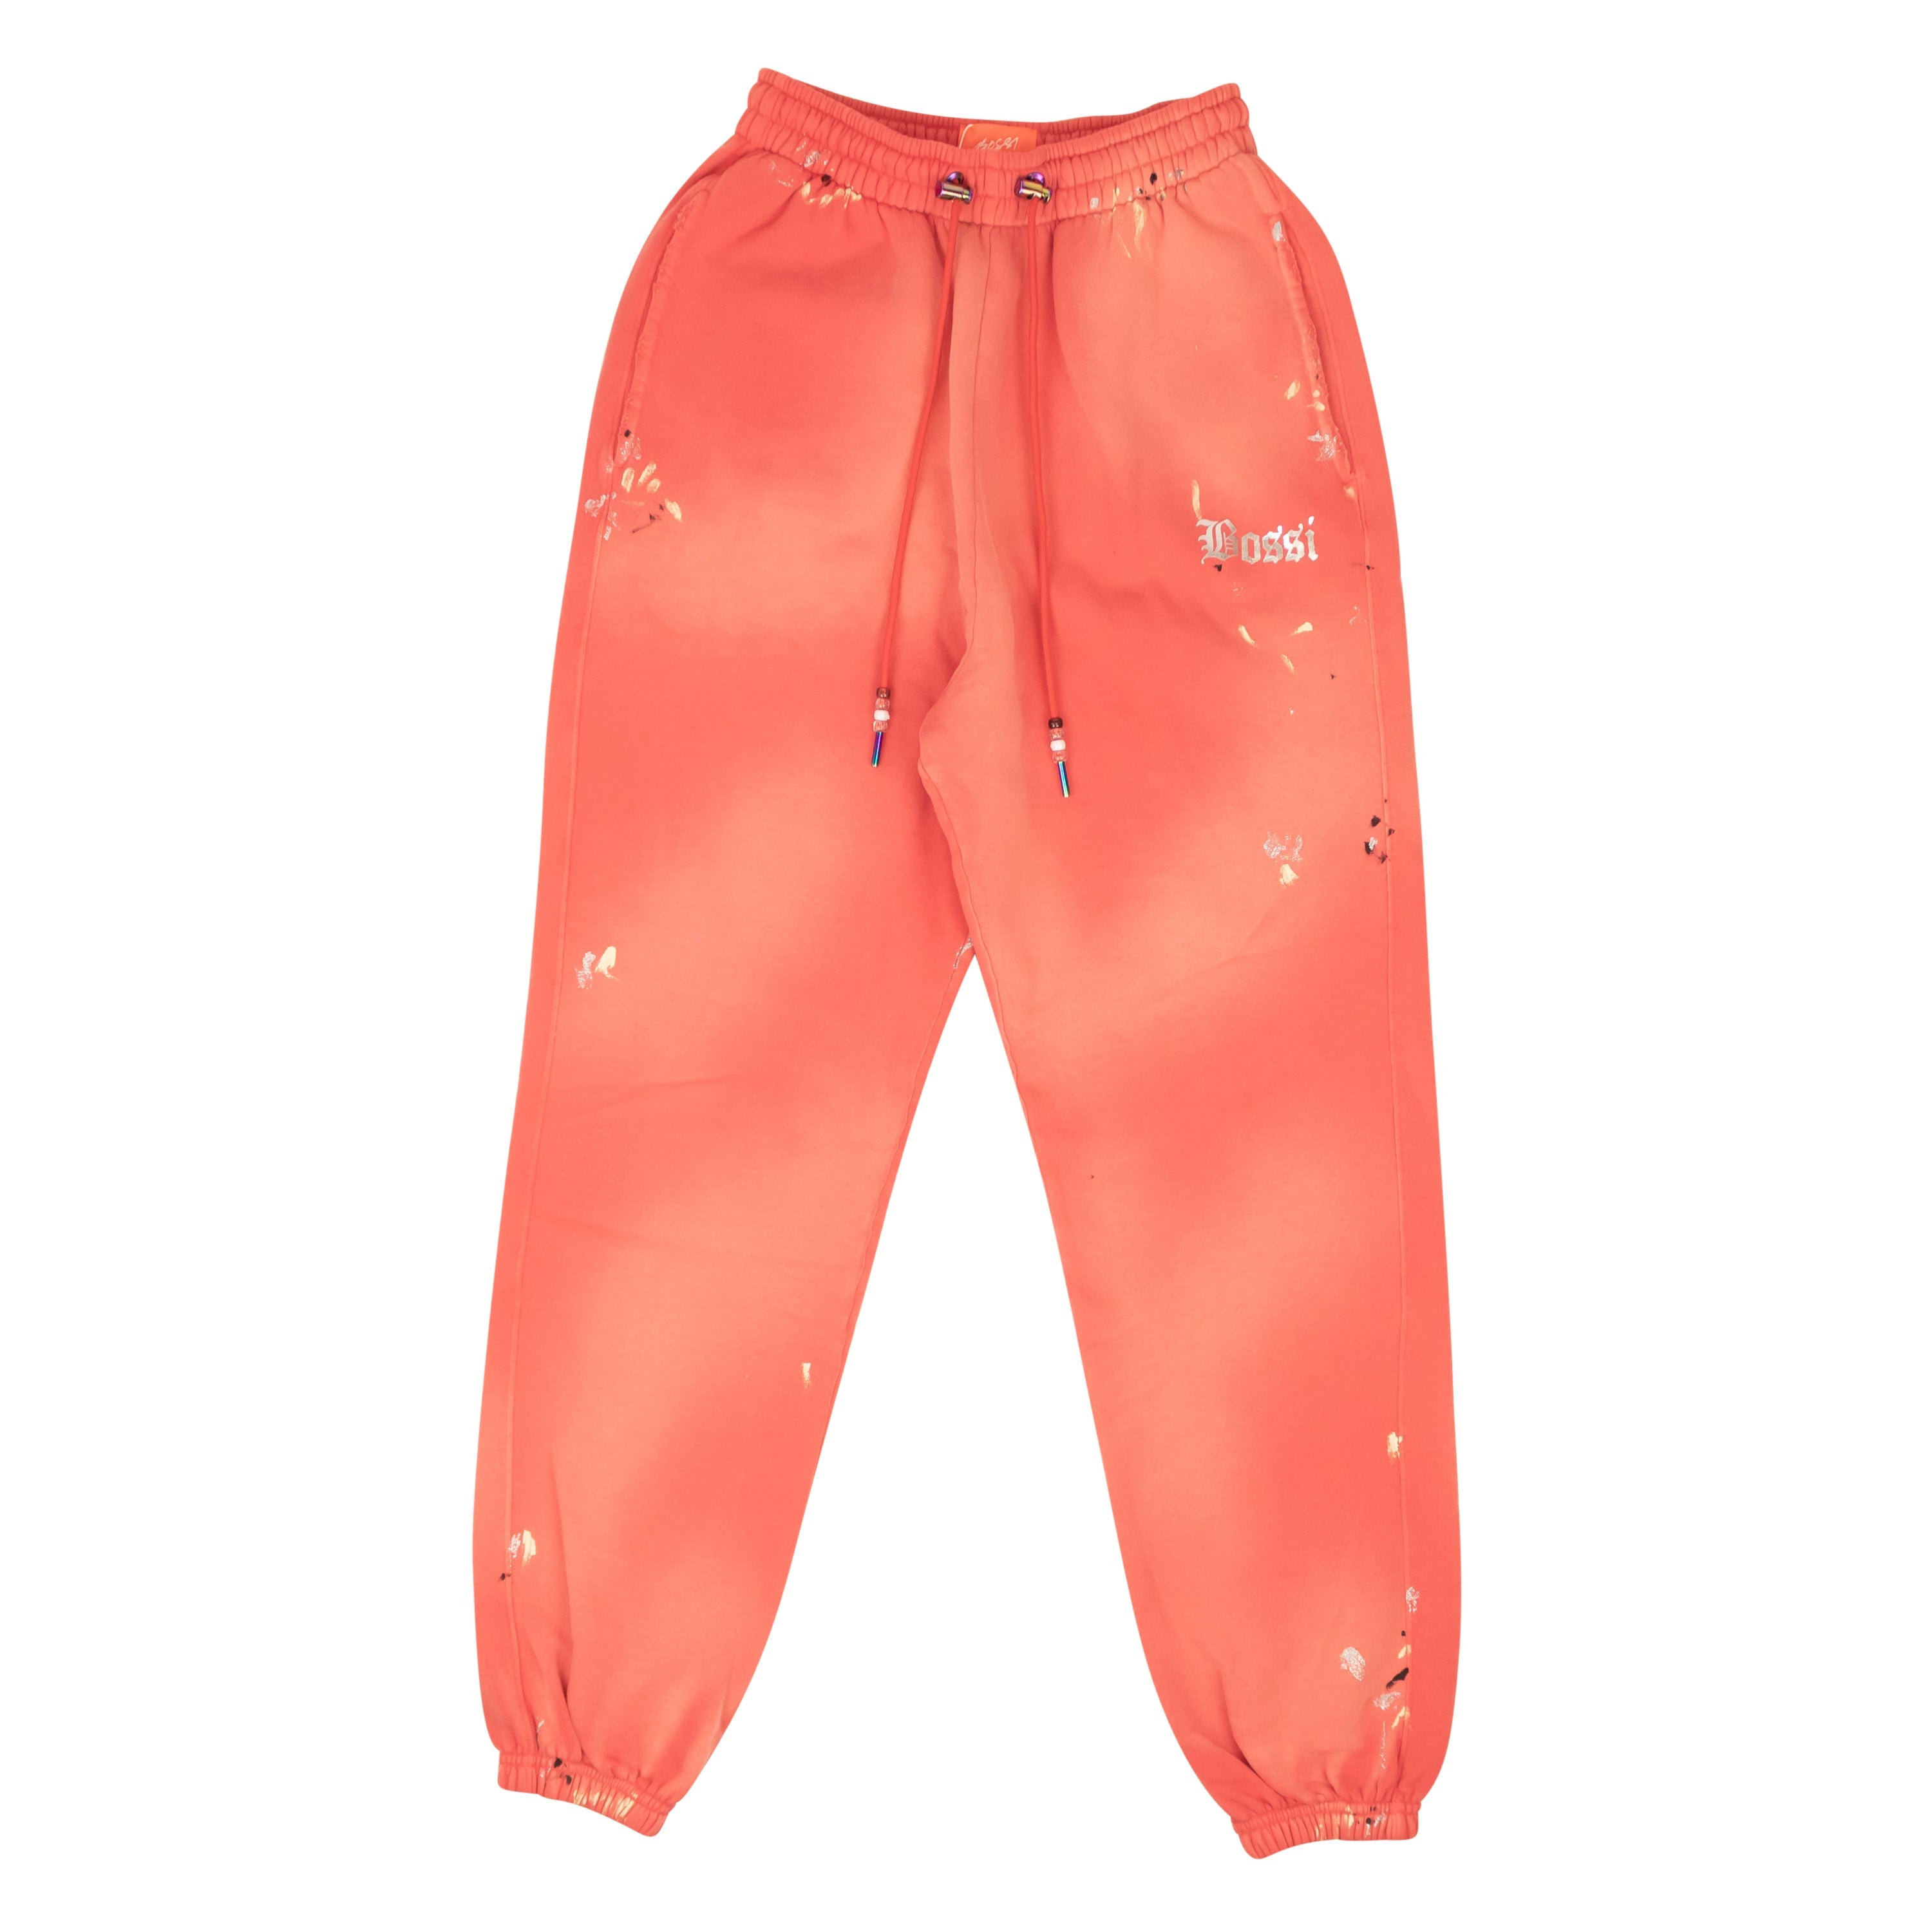 Bossi Crest Paint Sweatpants - Nantucket Red In Orange